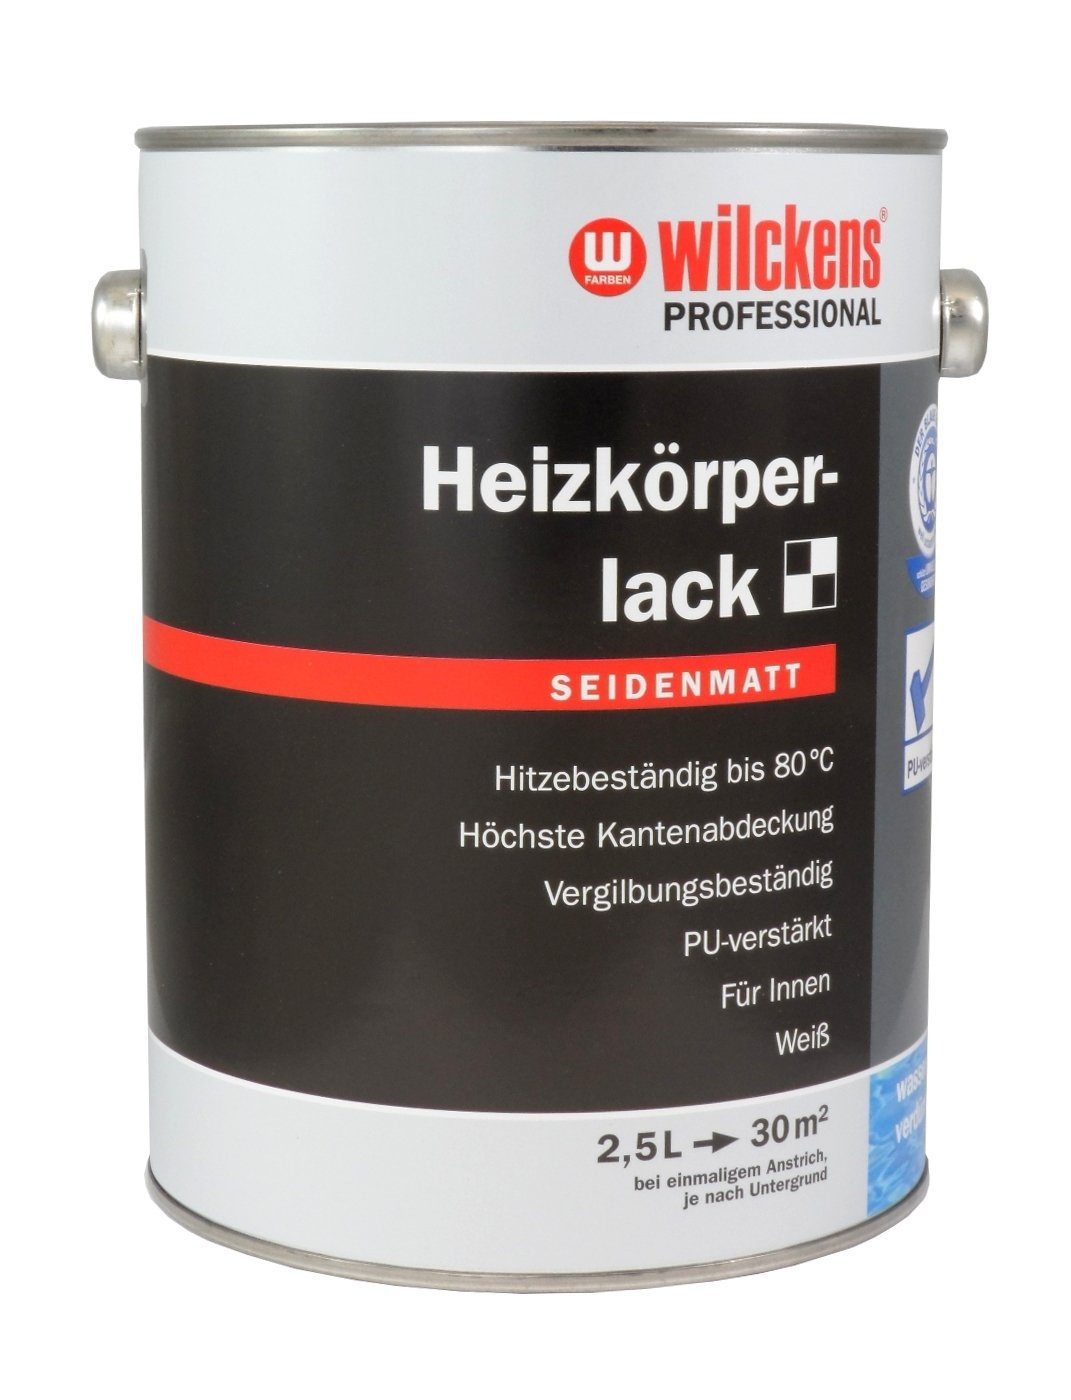 Liter wilckens® Seidenmatt Heizkörperlack PROFESSIONAL Lack 2,5 Weiß